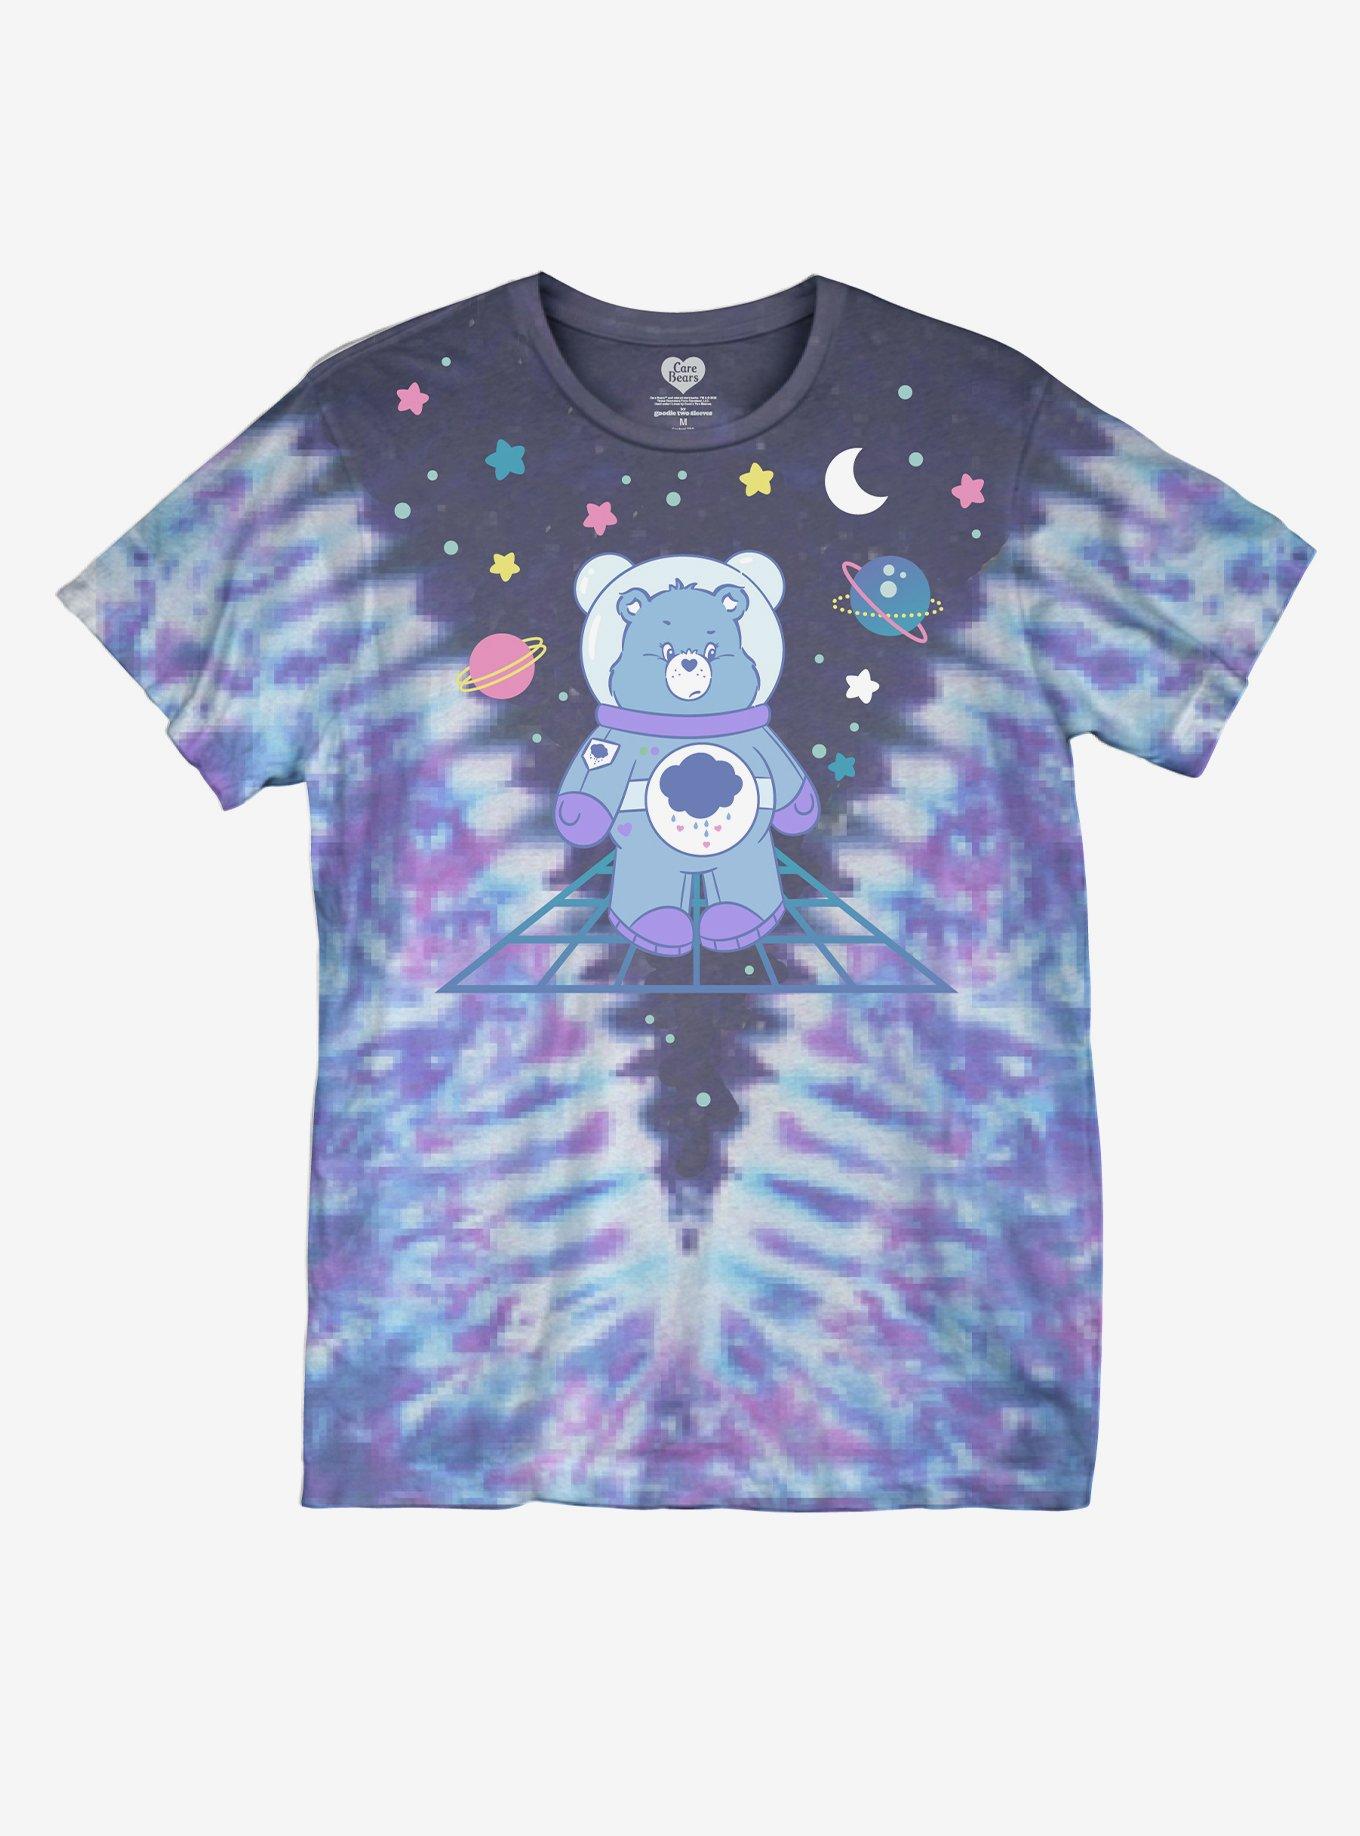 Care Bears Space Tie-Dye Boyfriend Fit Girls T-Shirt